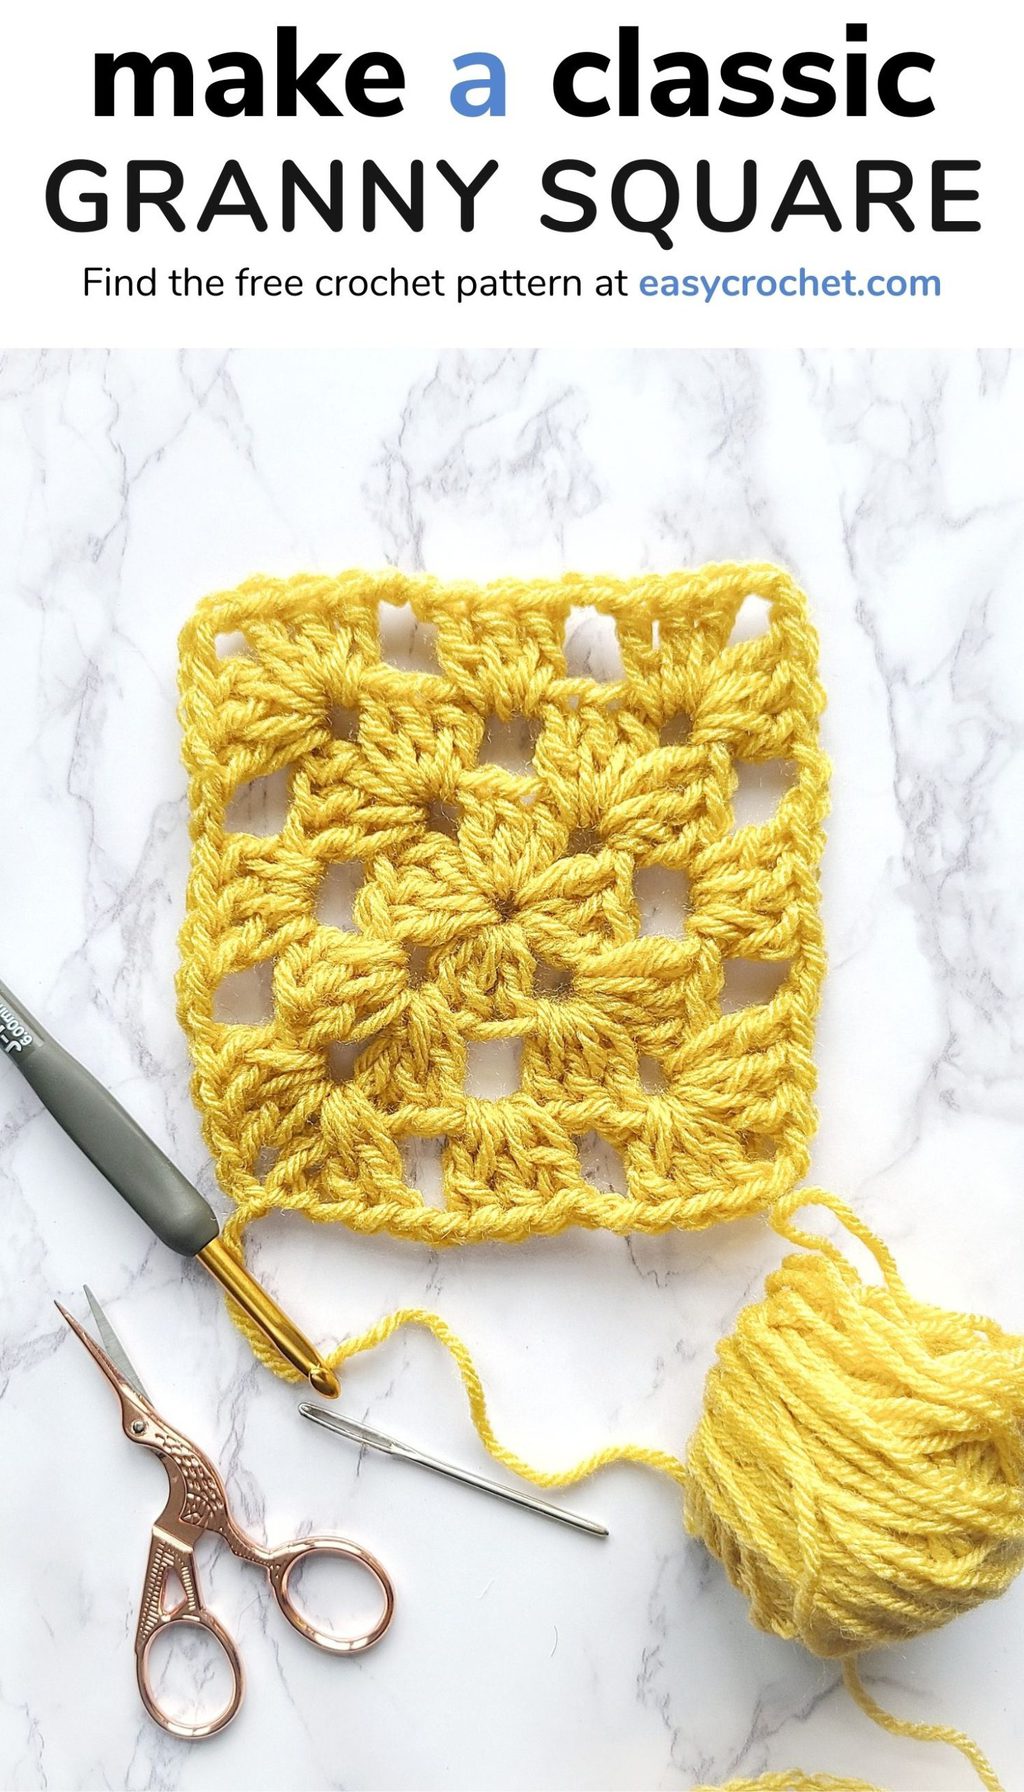 How to Crochet a Classic Granny Square via @easycrochetcom